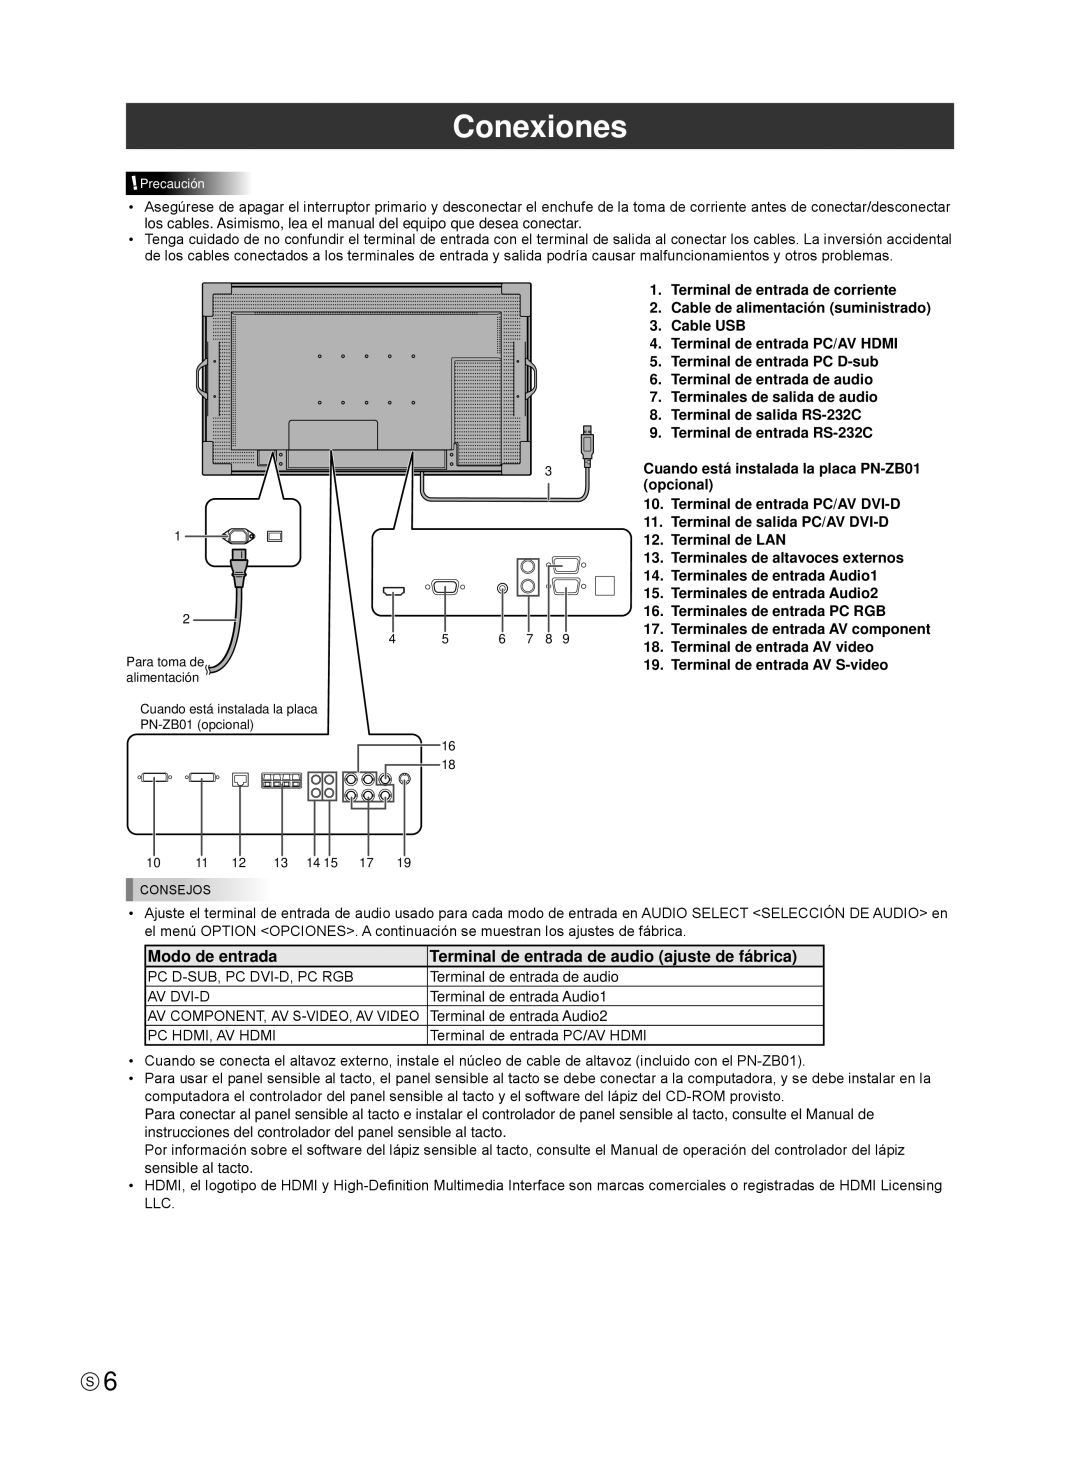 Sharp TINSE1181MPZZ(2) installation manual Conexiones, Modo de entrada, Terminal de entrada de audio ajuste de fábrica 